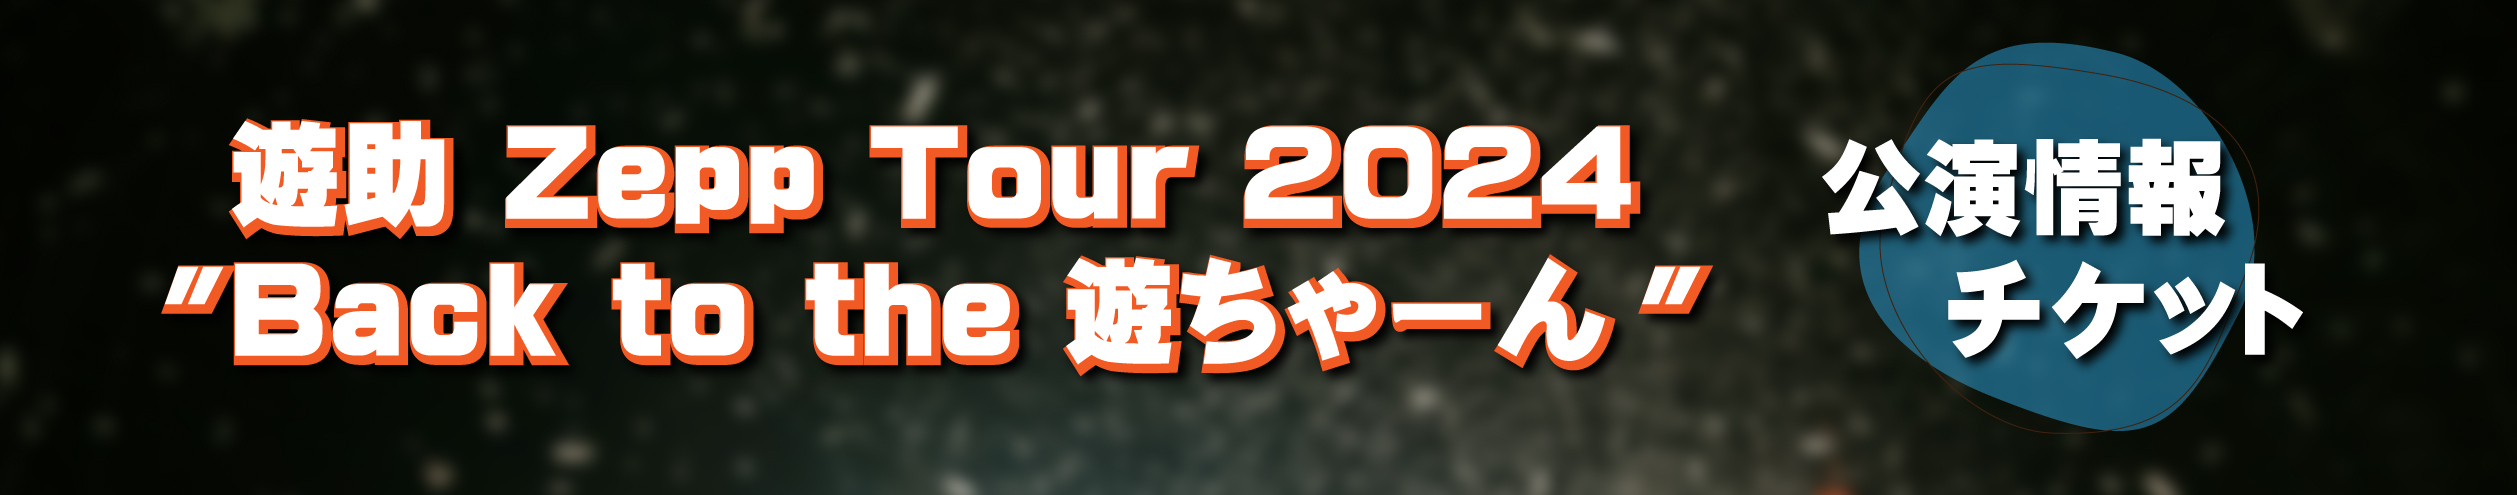 Zepp Tour 2024